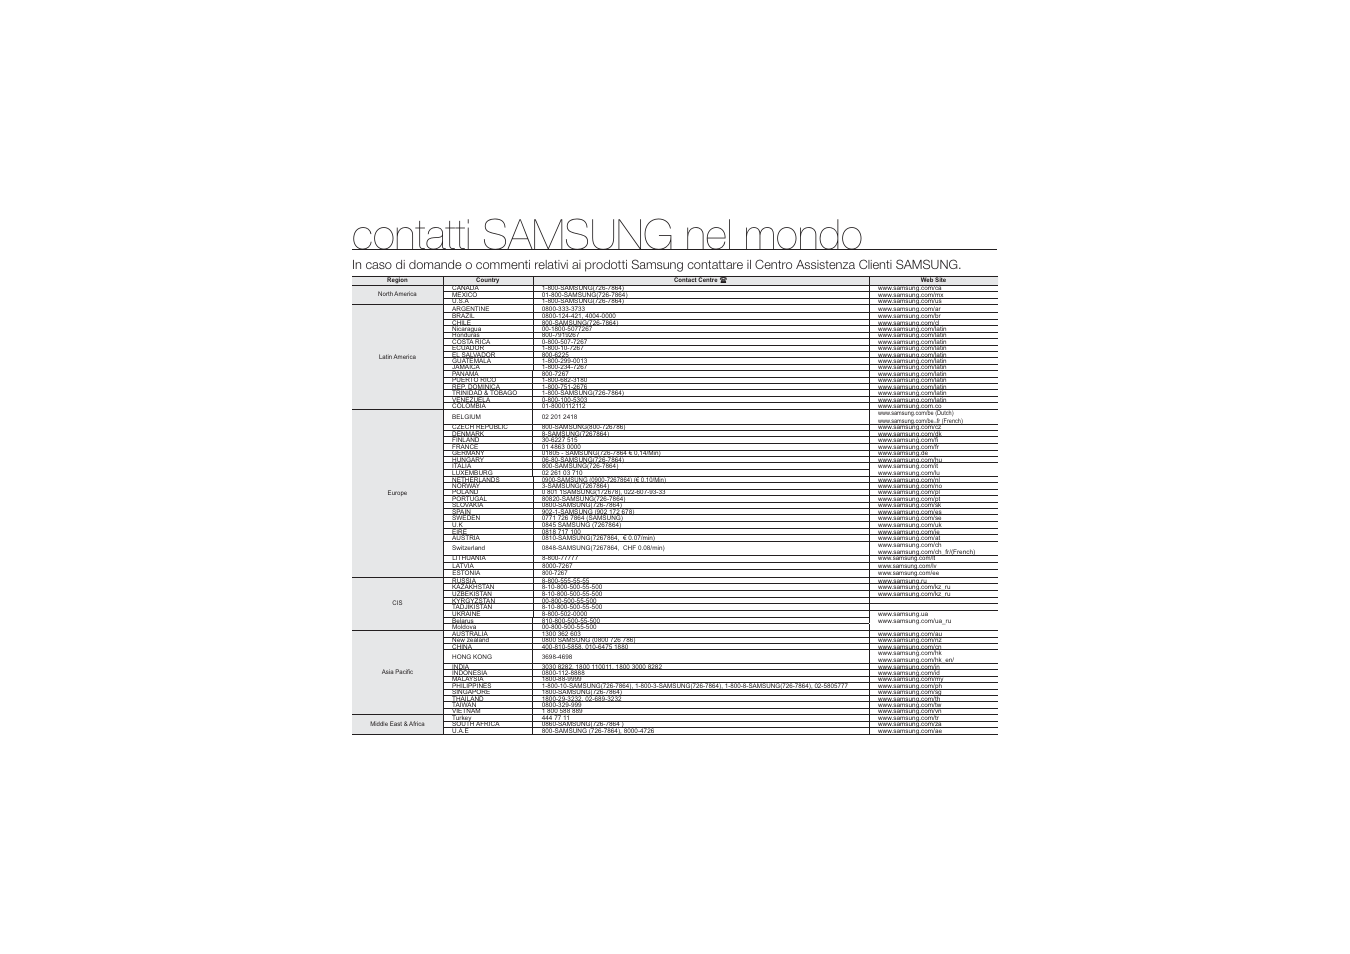 Contatti samsung nel mondo | Samsung HMX-U10RP Manuale d'uso | Pagina 97 / 98